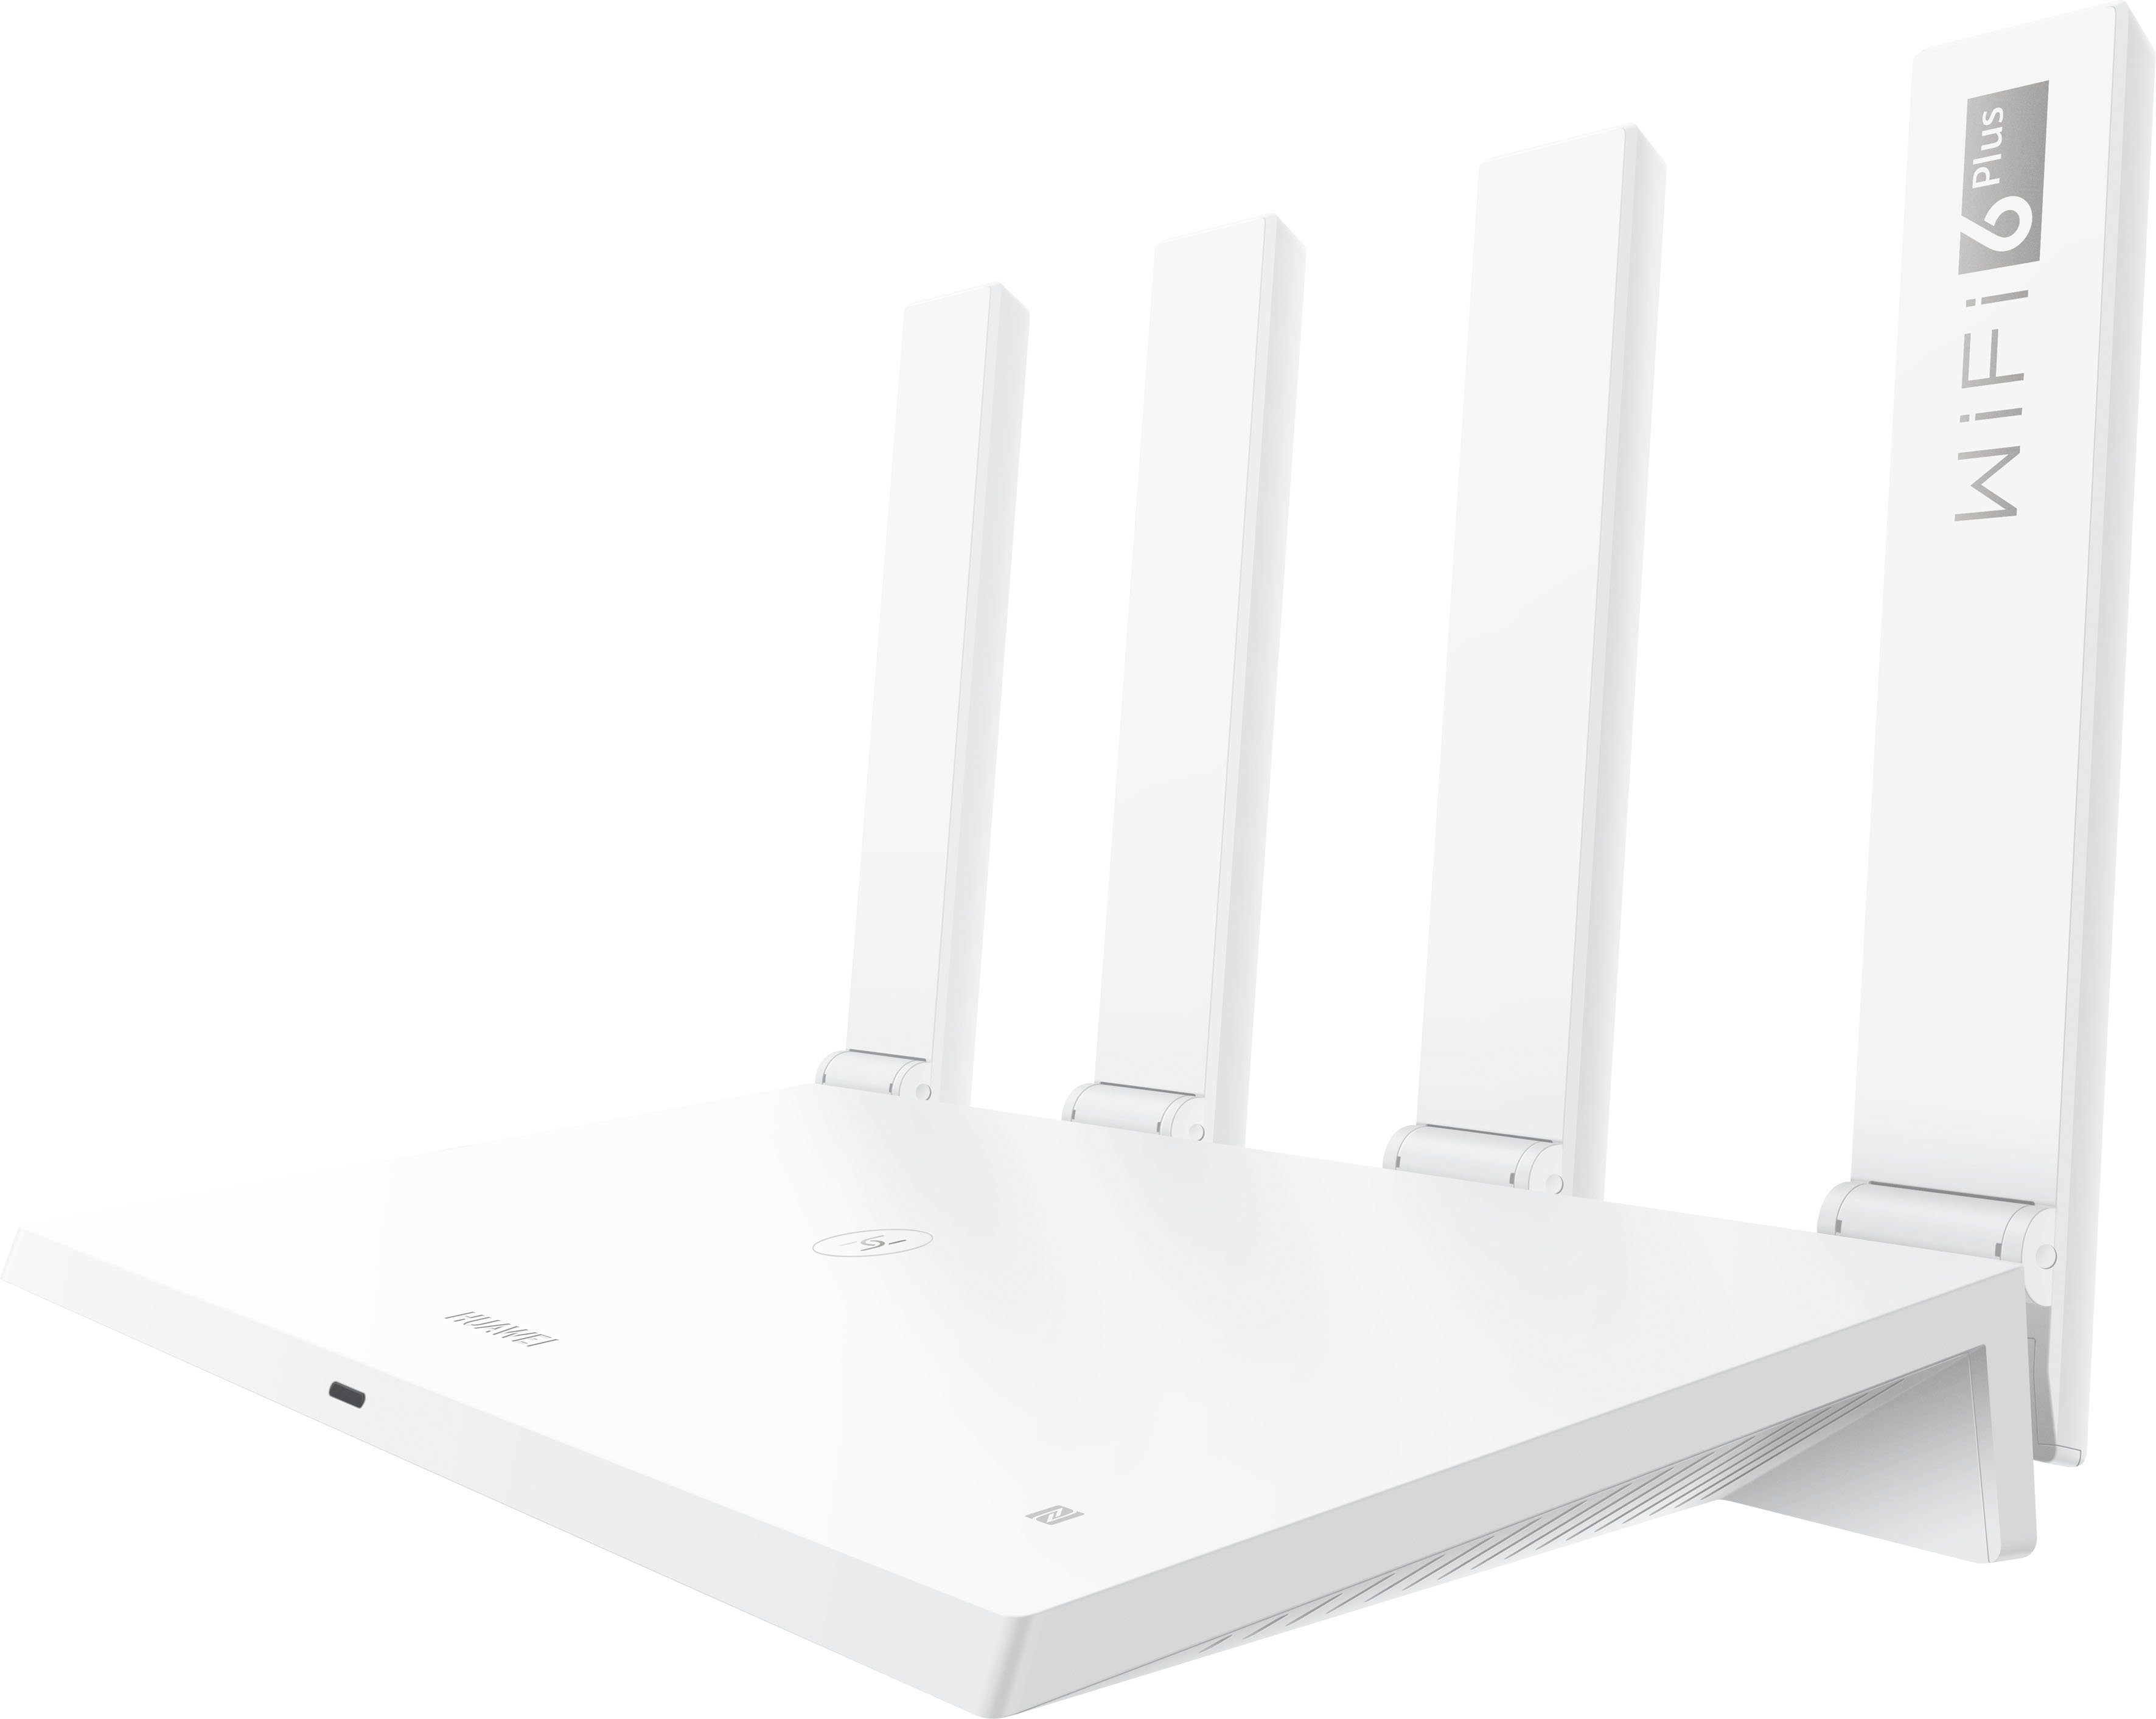 Günstige WLAN-Router online kaufen » Reduziert im SALE | OTTO